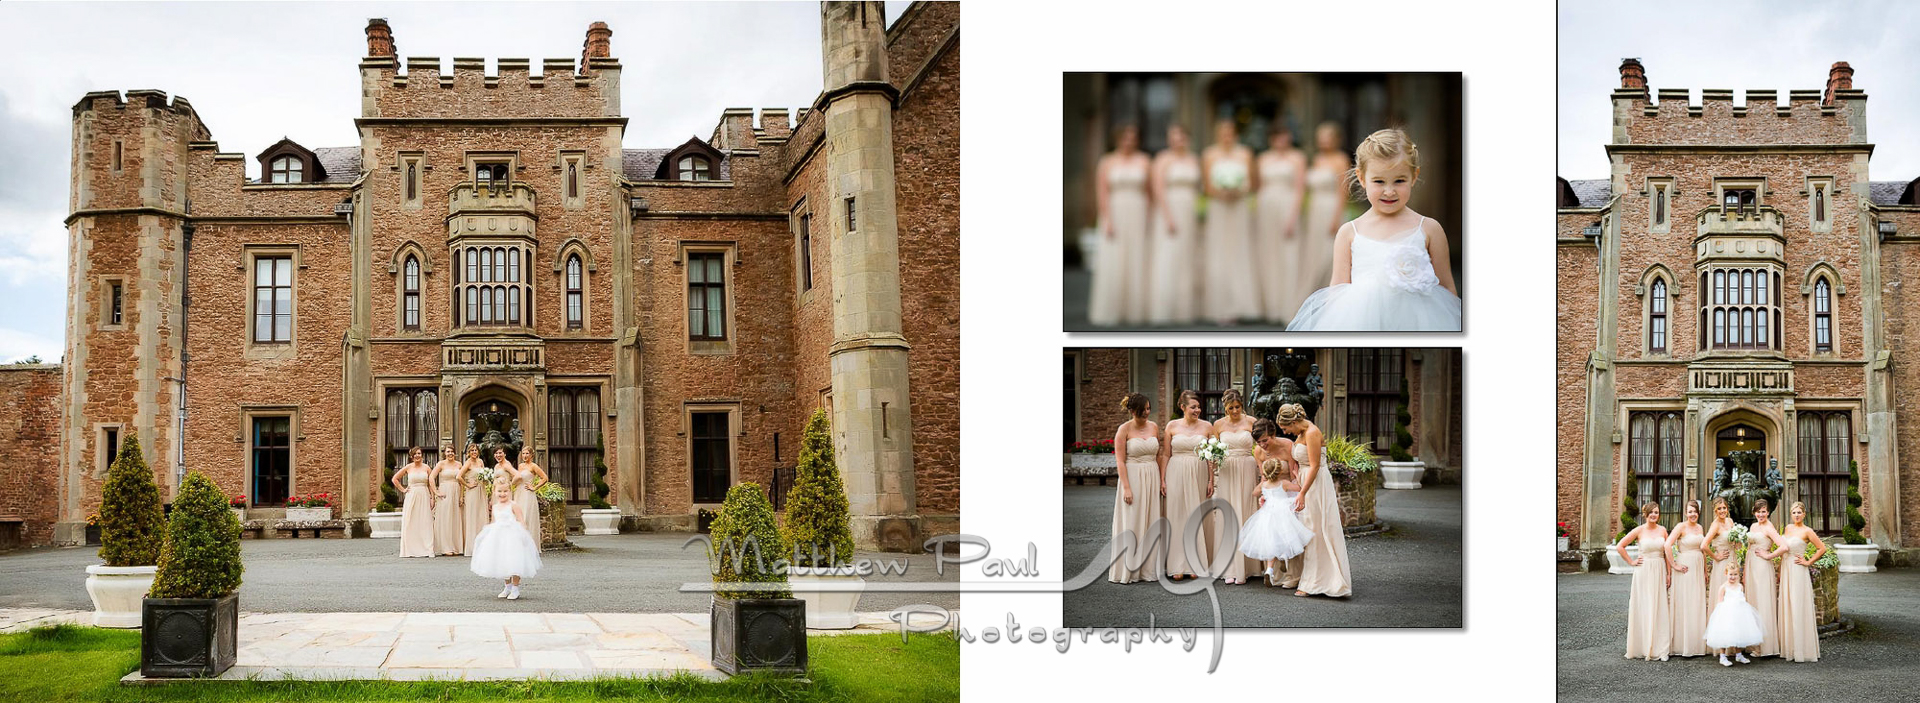 Shrewsbury wedding at Rowton Castle